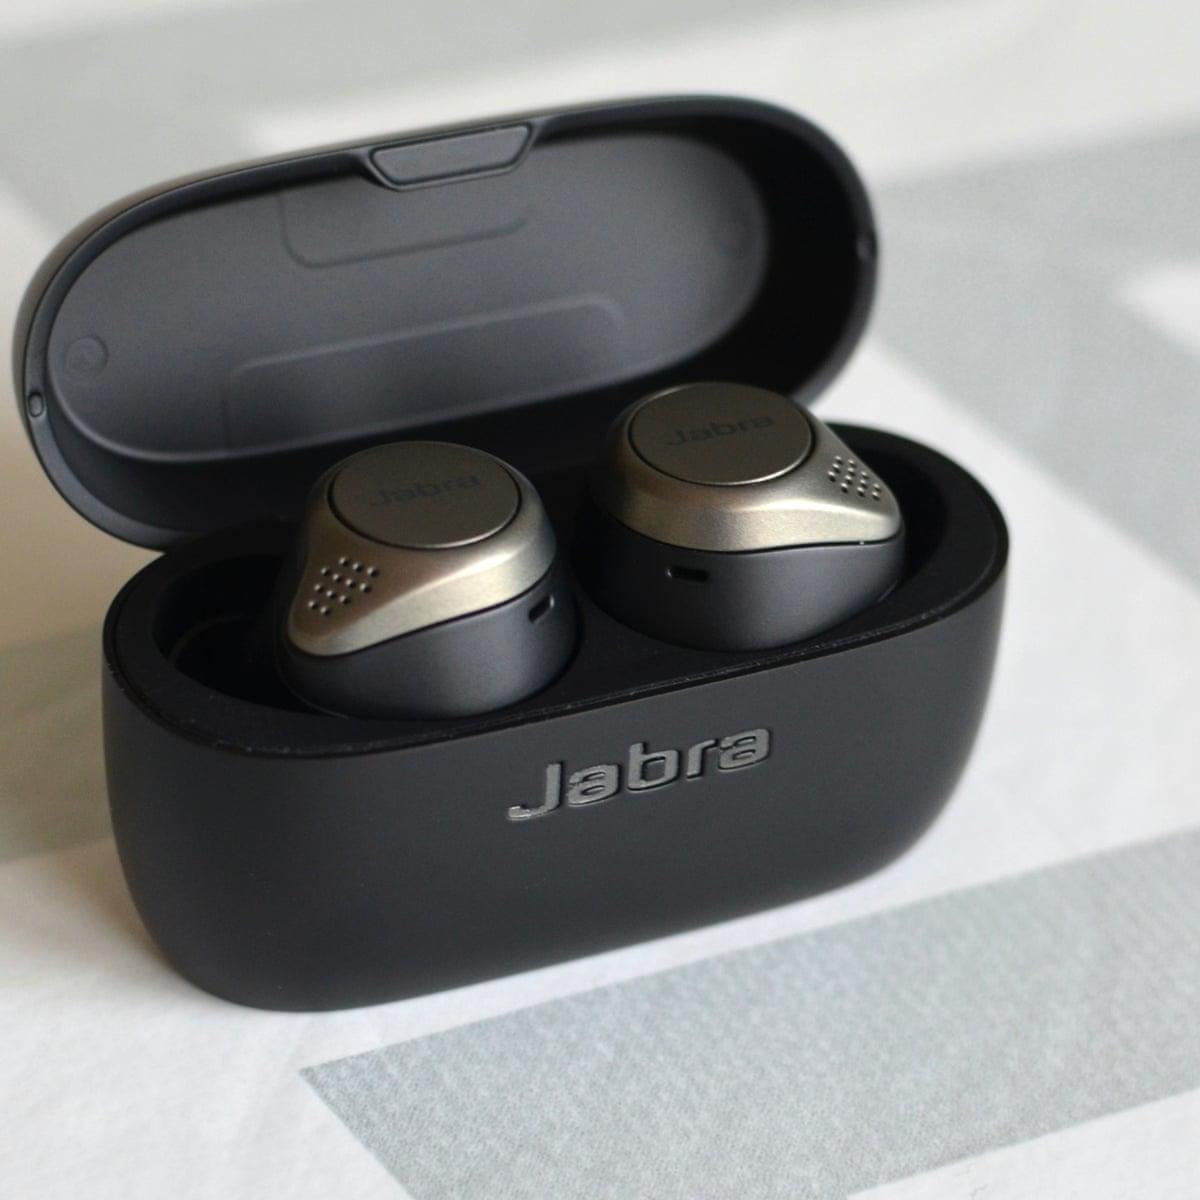 jabra-elite-75t-true-wireless-in-ear-headphones-with-anc.jpg